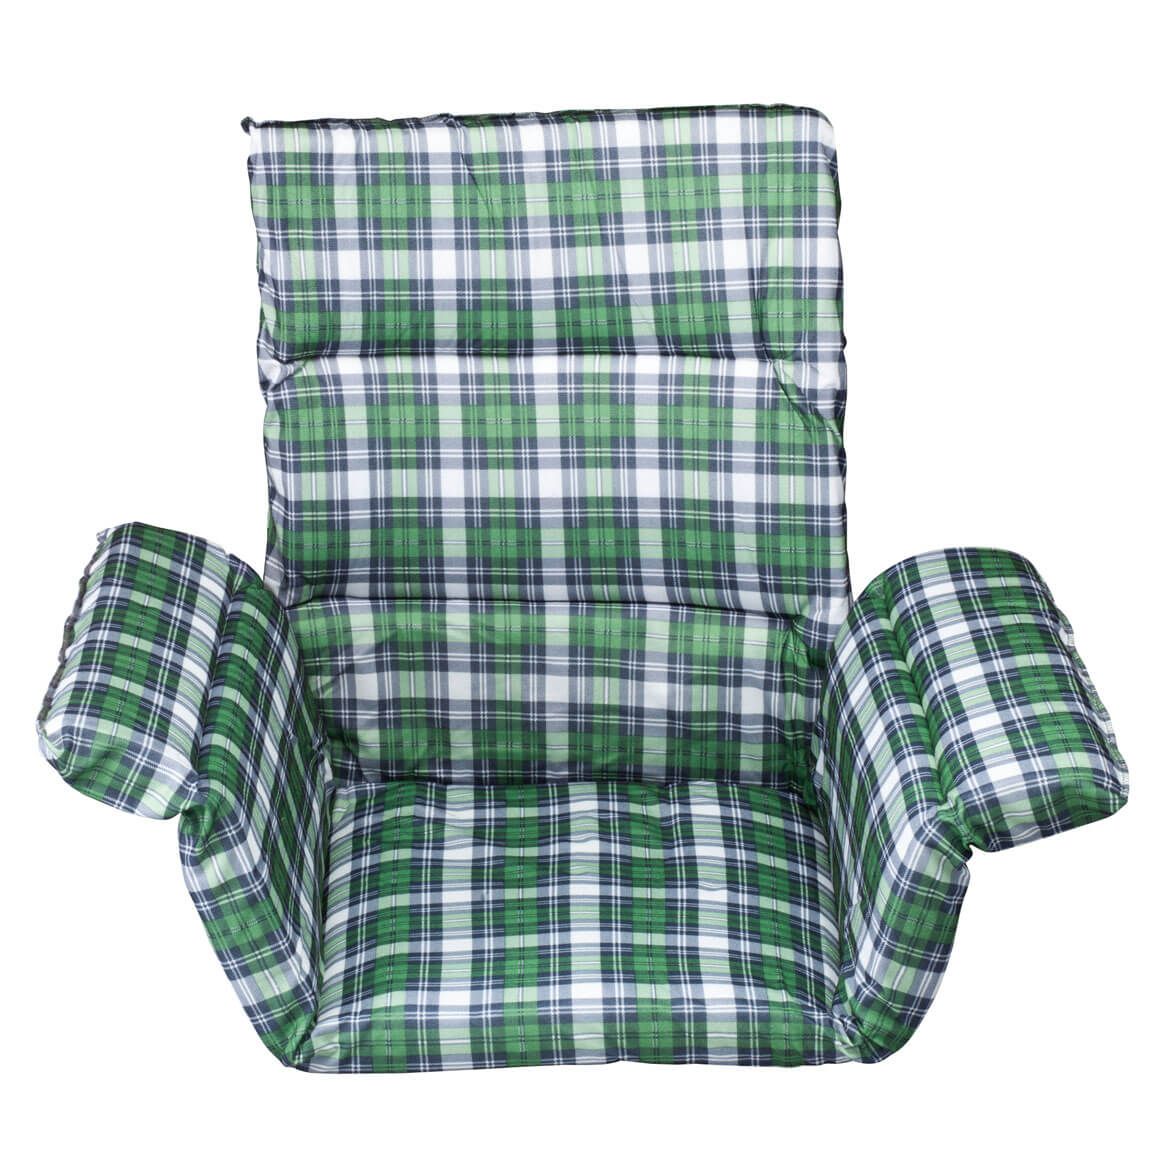 Pressure Reducing Chair Cushion + '-' + 302562